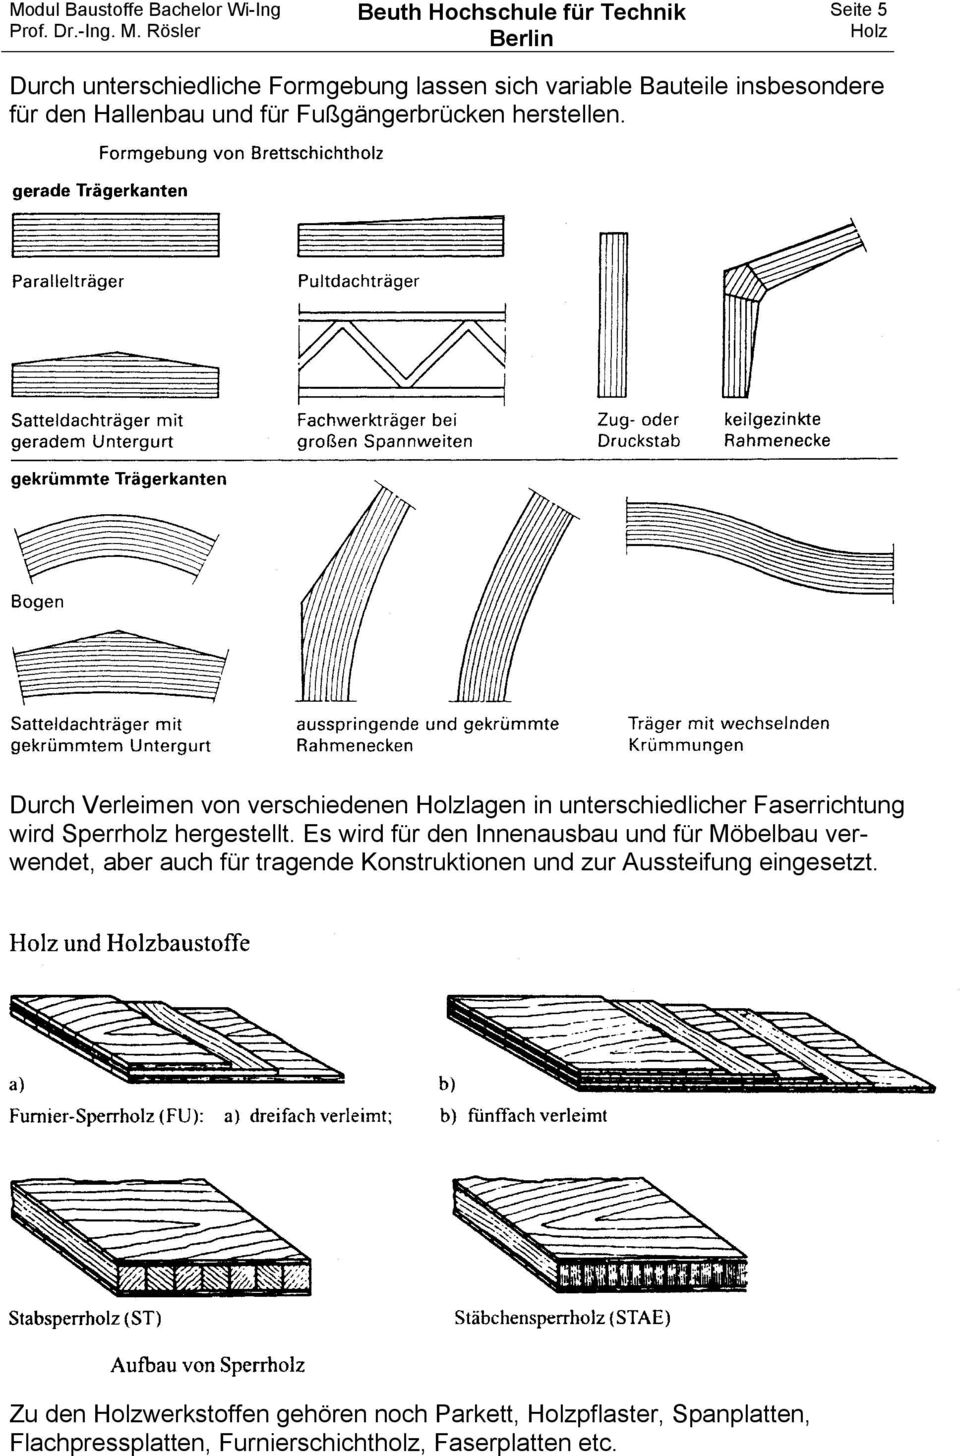 Durch Verleimen von verschiedenen lagen in unterschiedlicher Faserrichtung wird Sperrholz hergestellt.